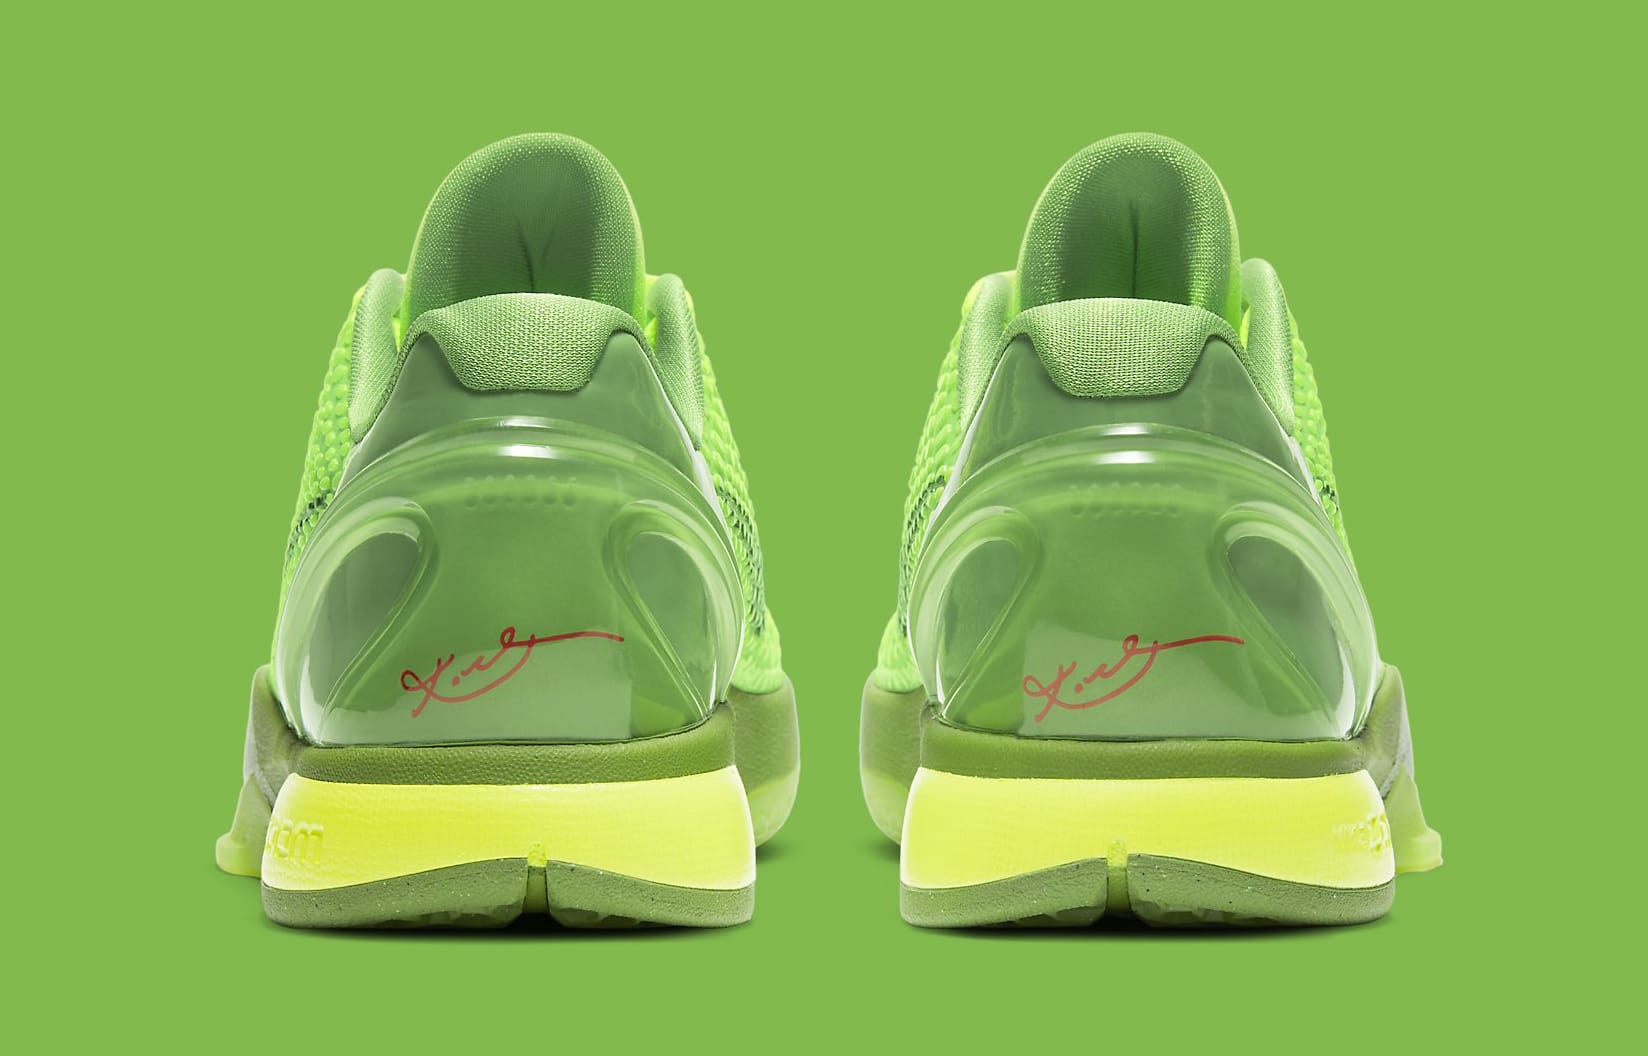 Nike Kobe 6 VI Protro Grinch CW2190-300 Release